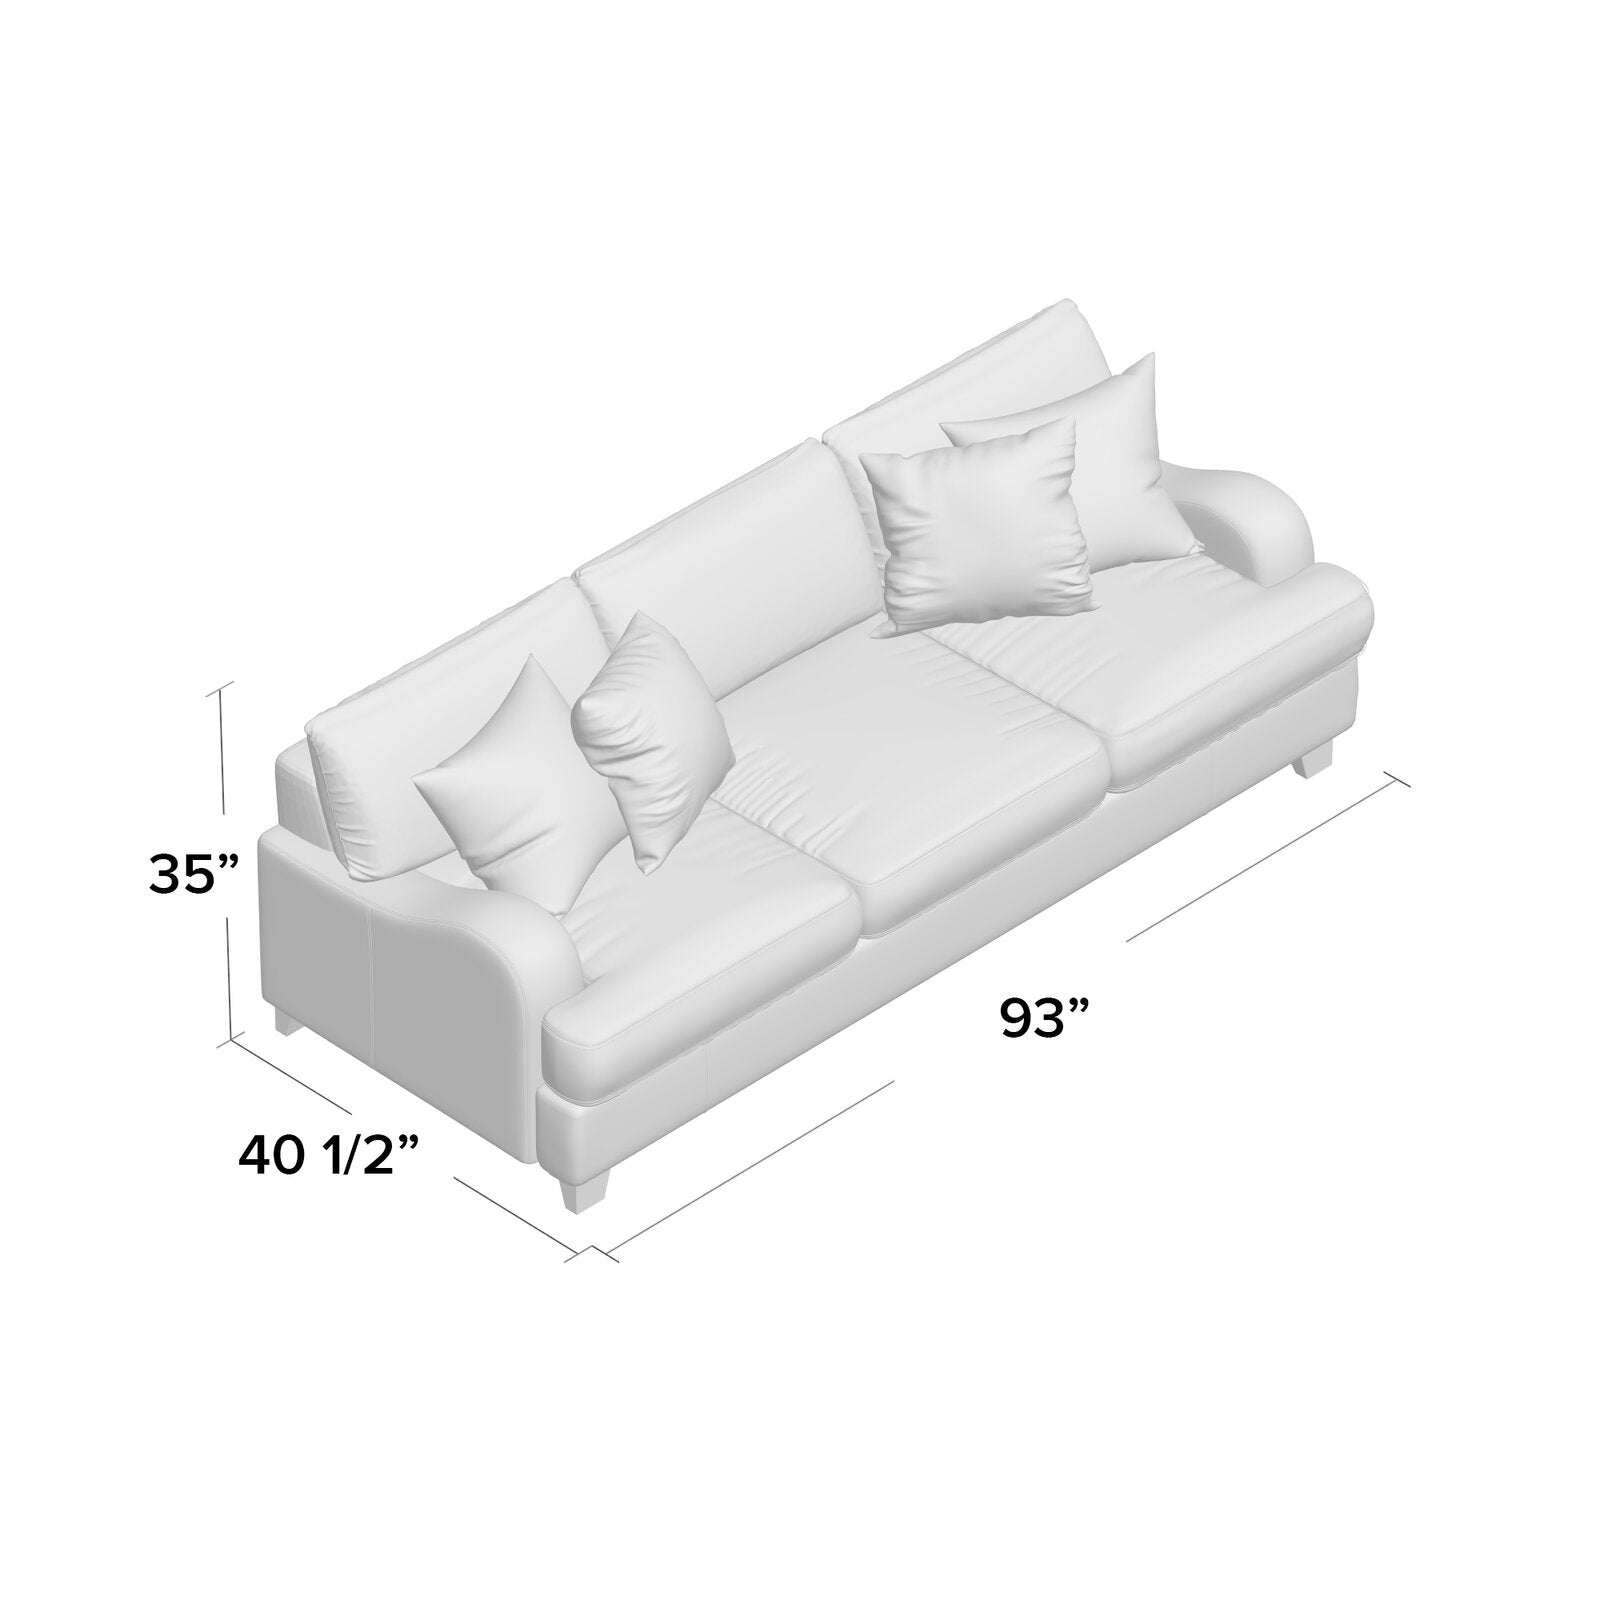 Paradigm Quartz 93" Recessed Arm Sofa